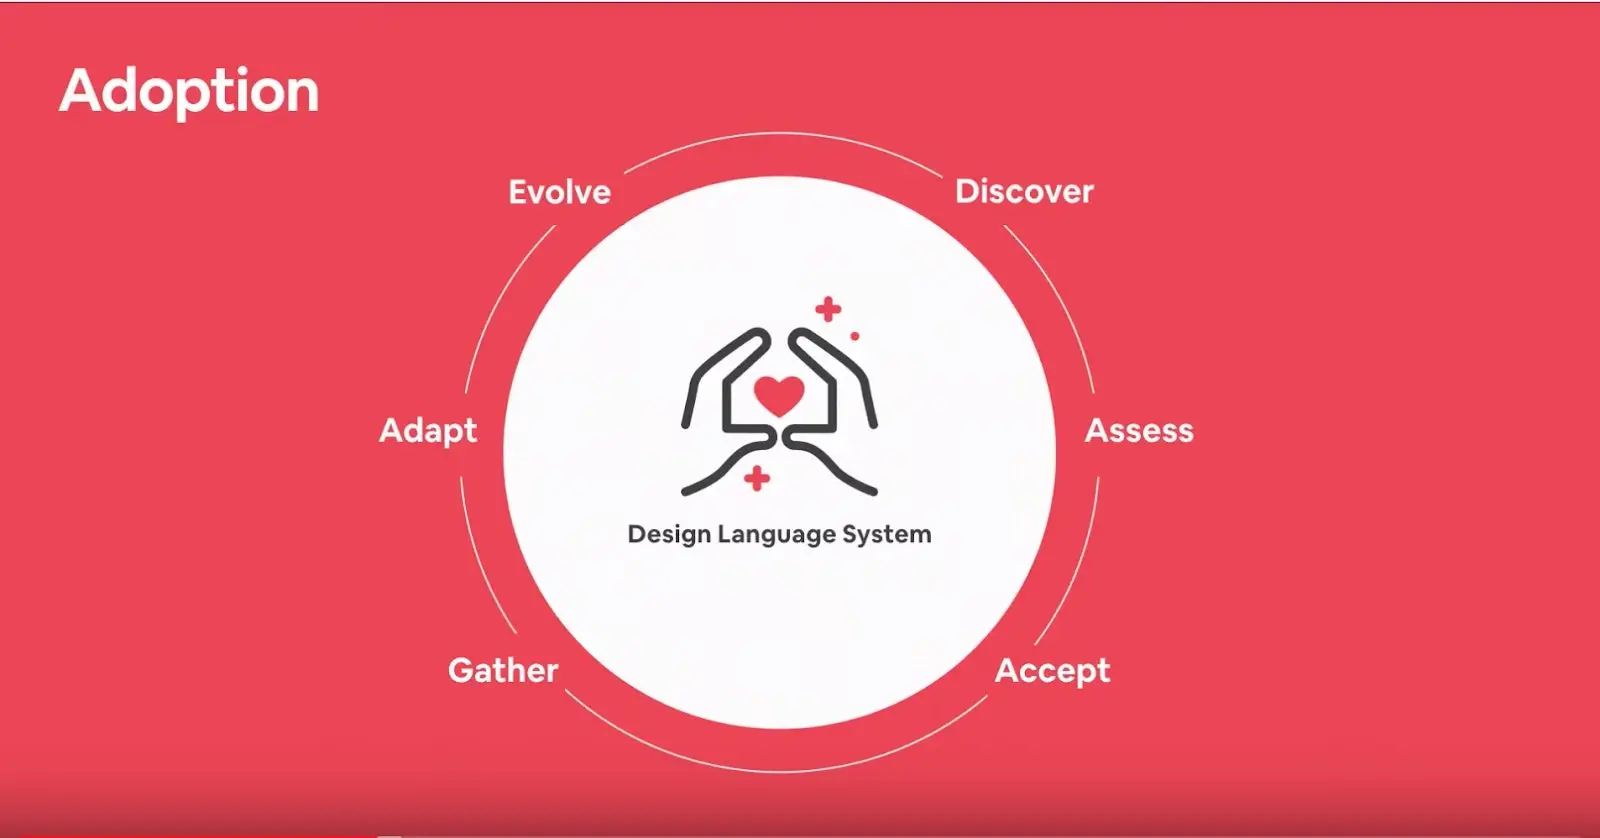 AirbnbのDesign Language Systemの採用モデルは、発券、評価、受け入れ、収集、適応、進化という採用サイクルのすべての側面を考慮している。